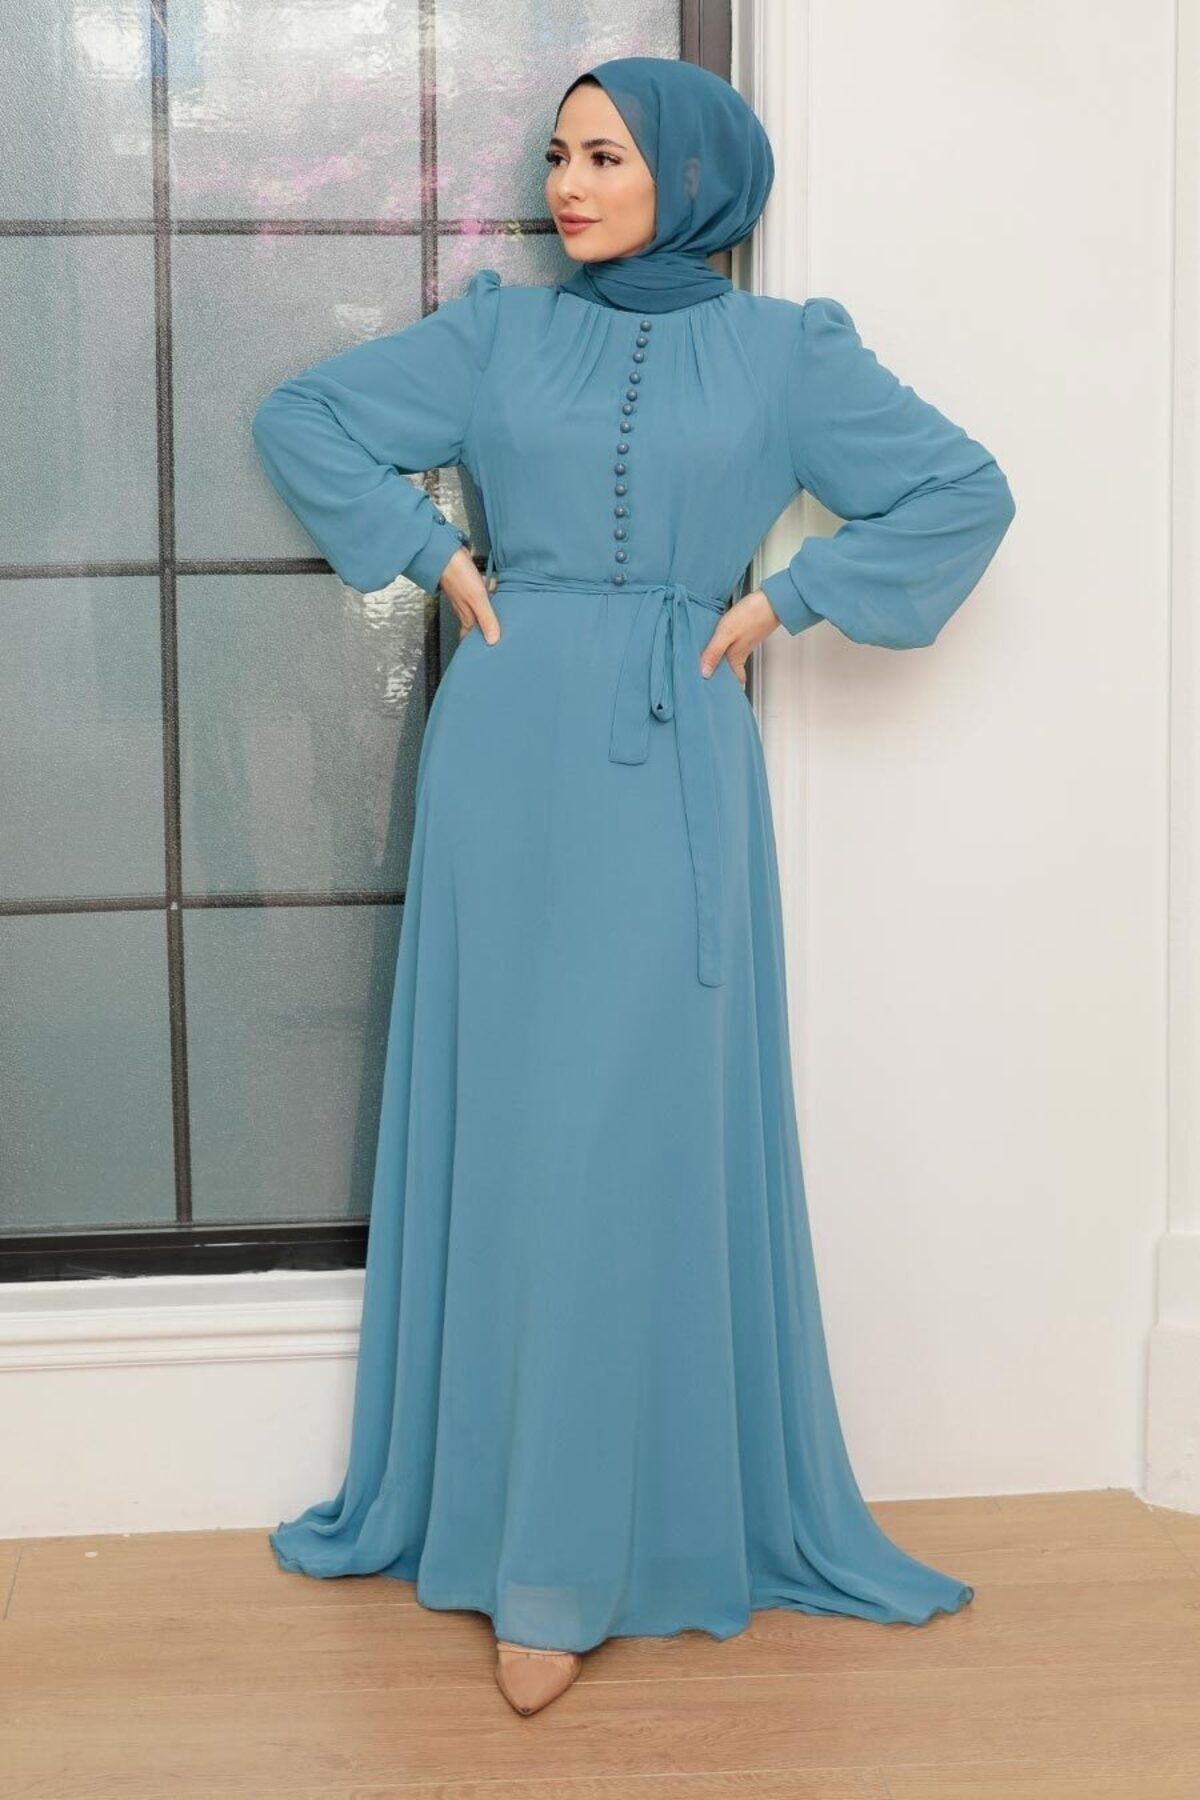 Neva Style - Düğme Detaylı Turkuaz Tesettür Elbise 2703tr